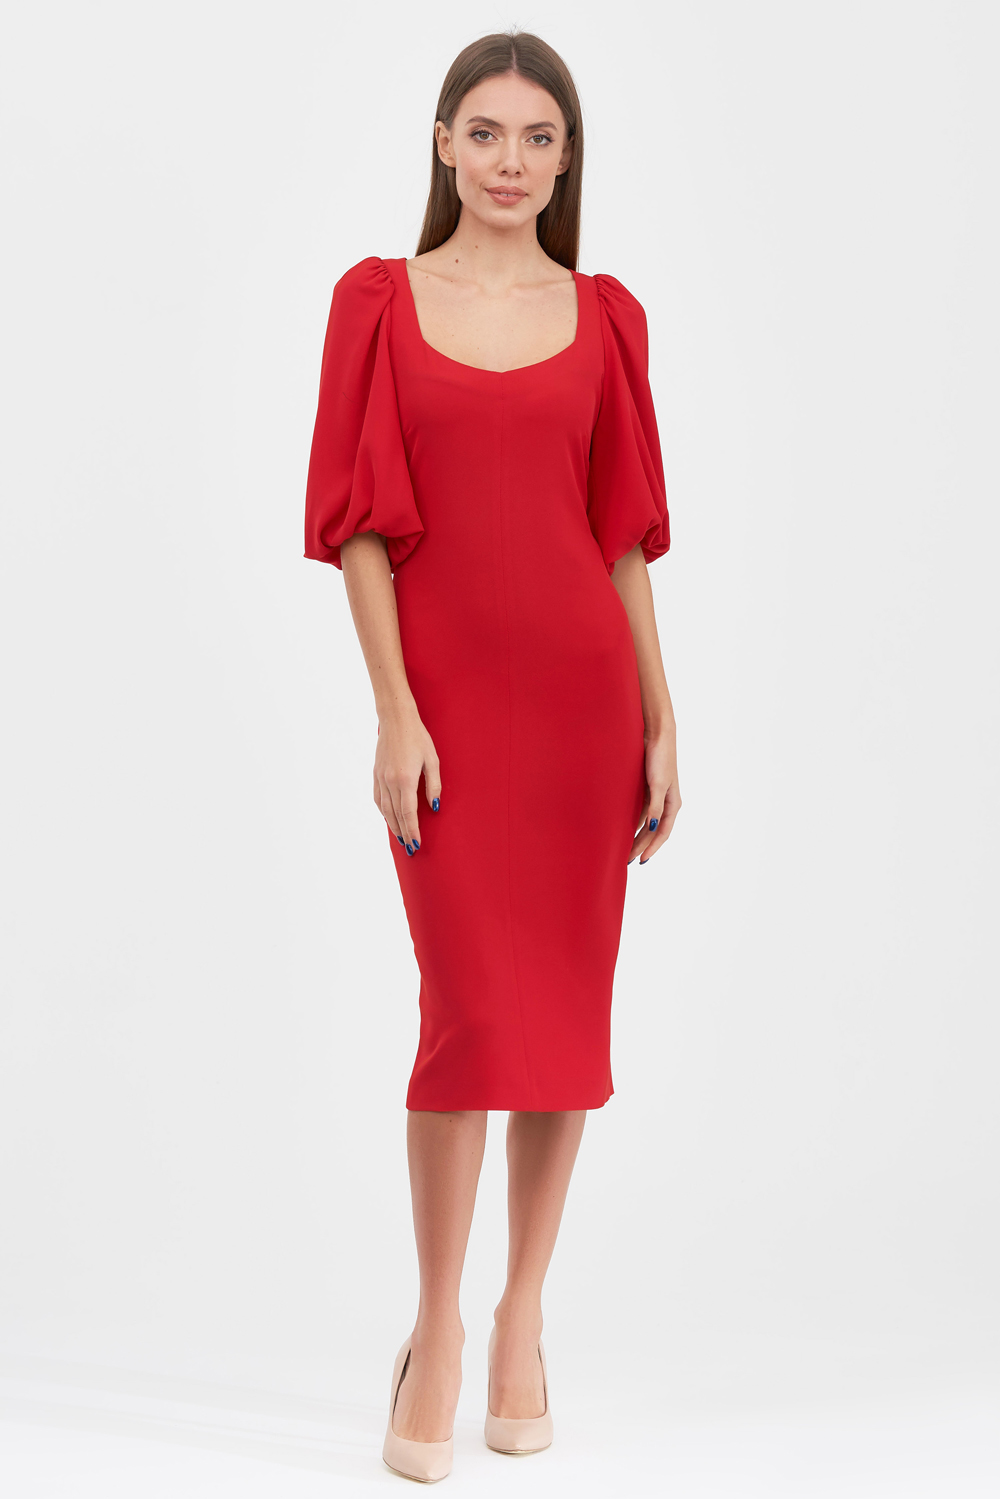 Сукня червого кольору із об'ємними рукавами